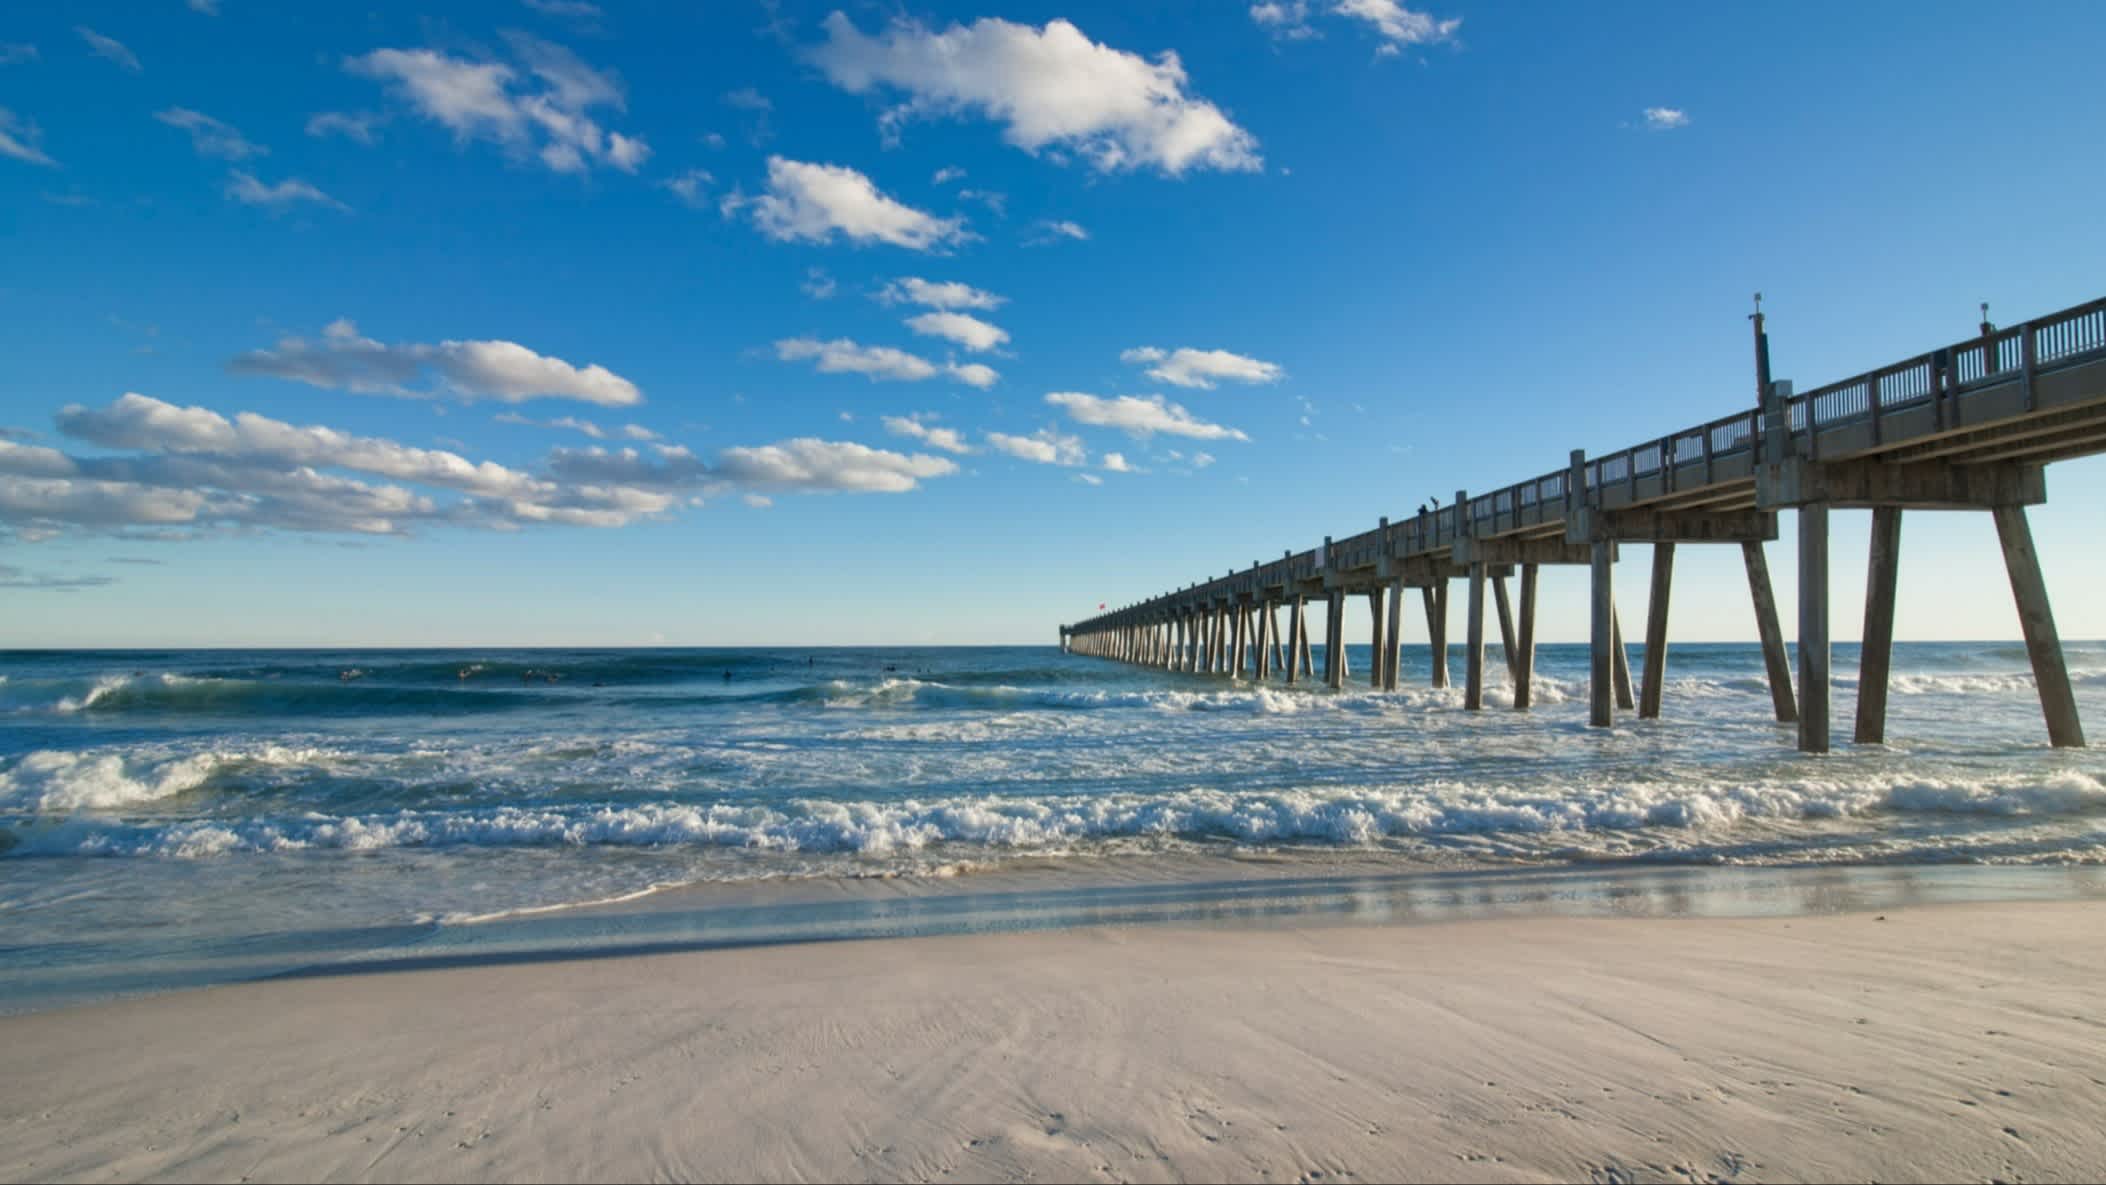 Der Strand Pensacola Beach, Escambia County, Florida, USA bei purem Sonnenschein mit Blick auf einen langen Steg der ins Wasser gebaut ist.